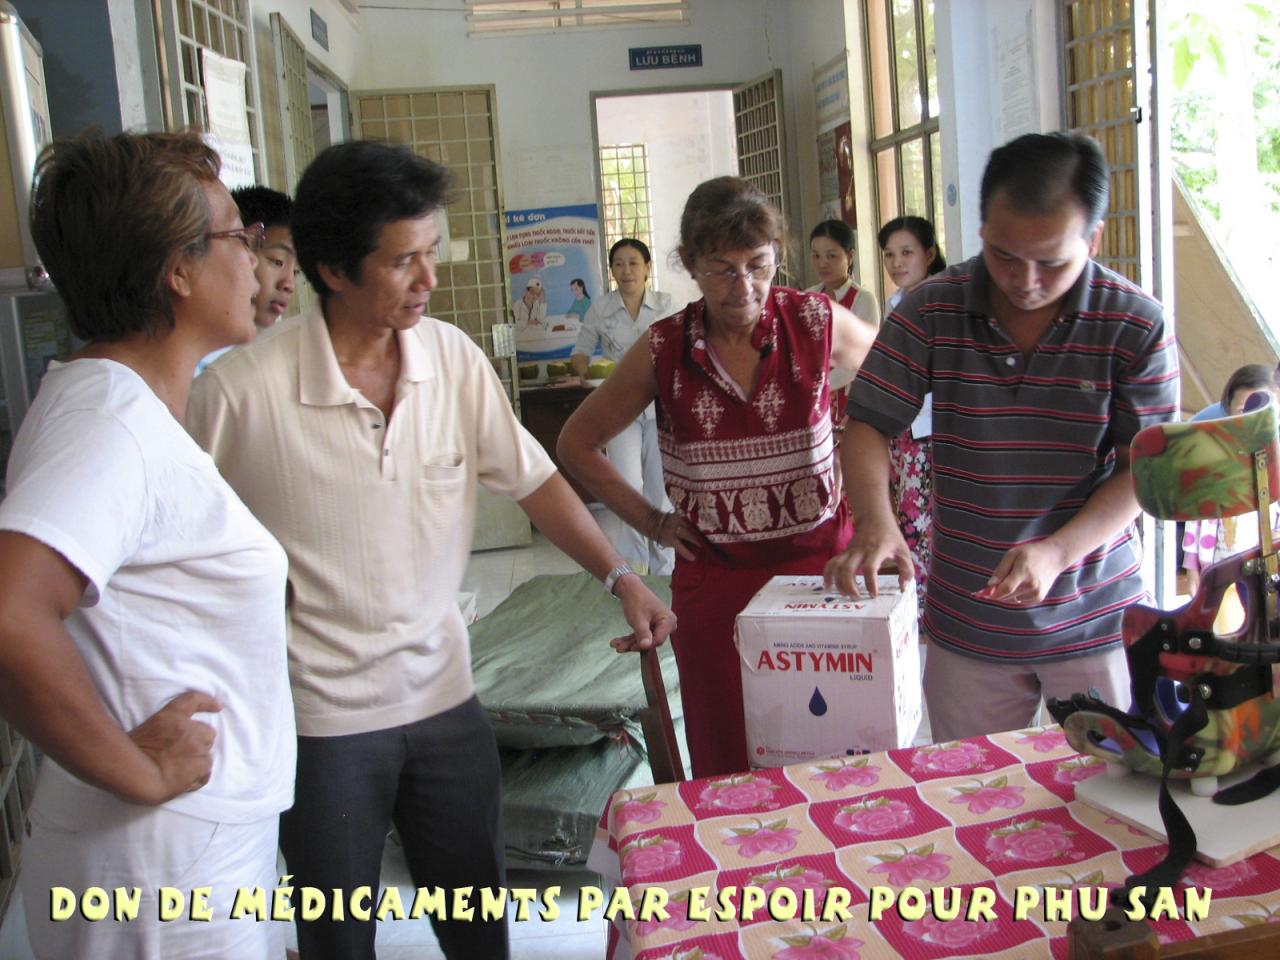 médicaments apportés par Espoir pour Phu San